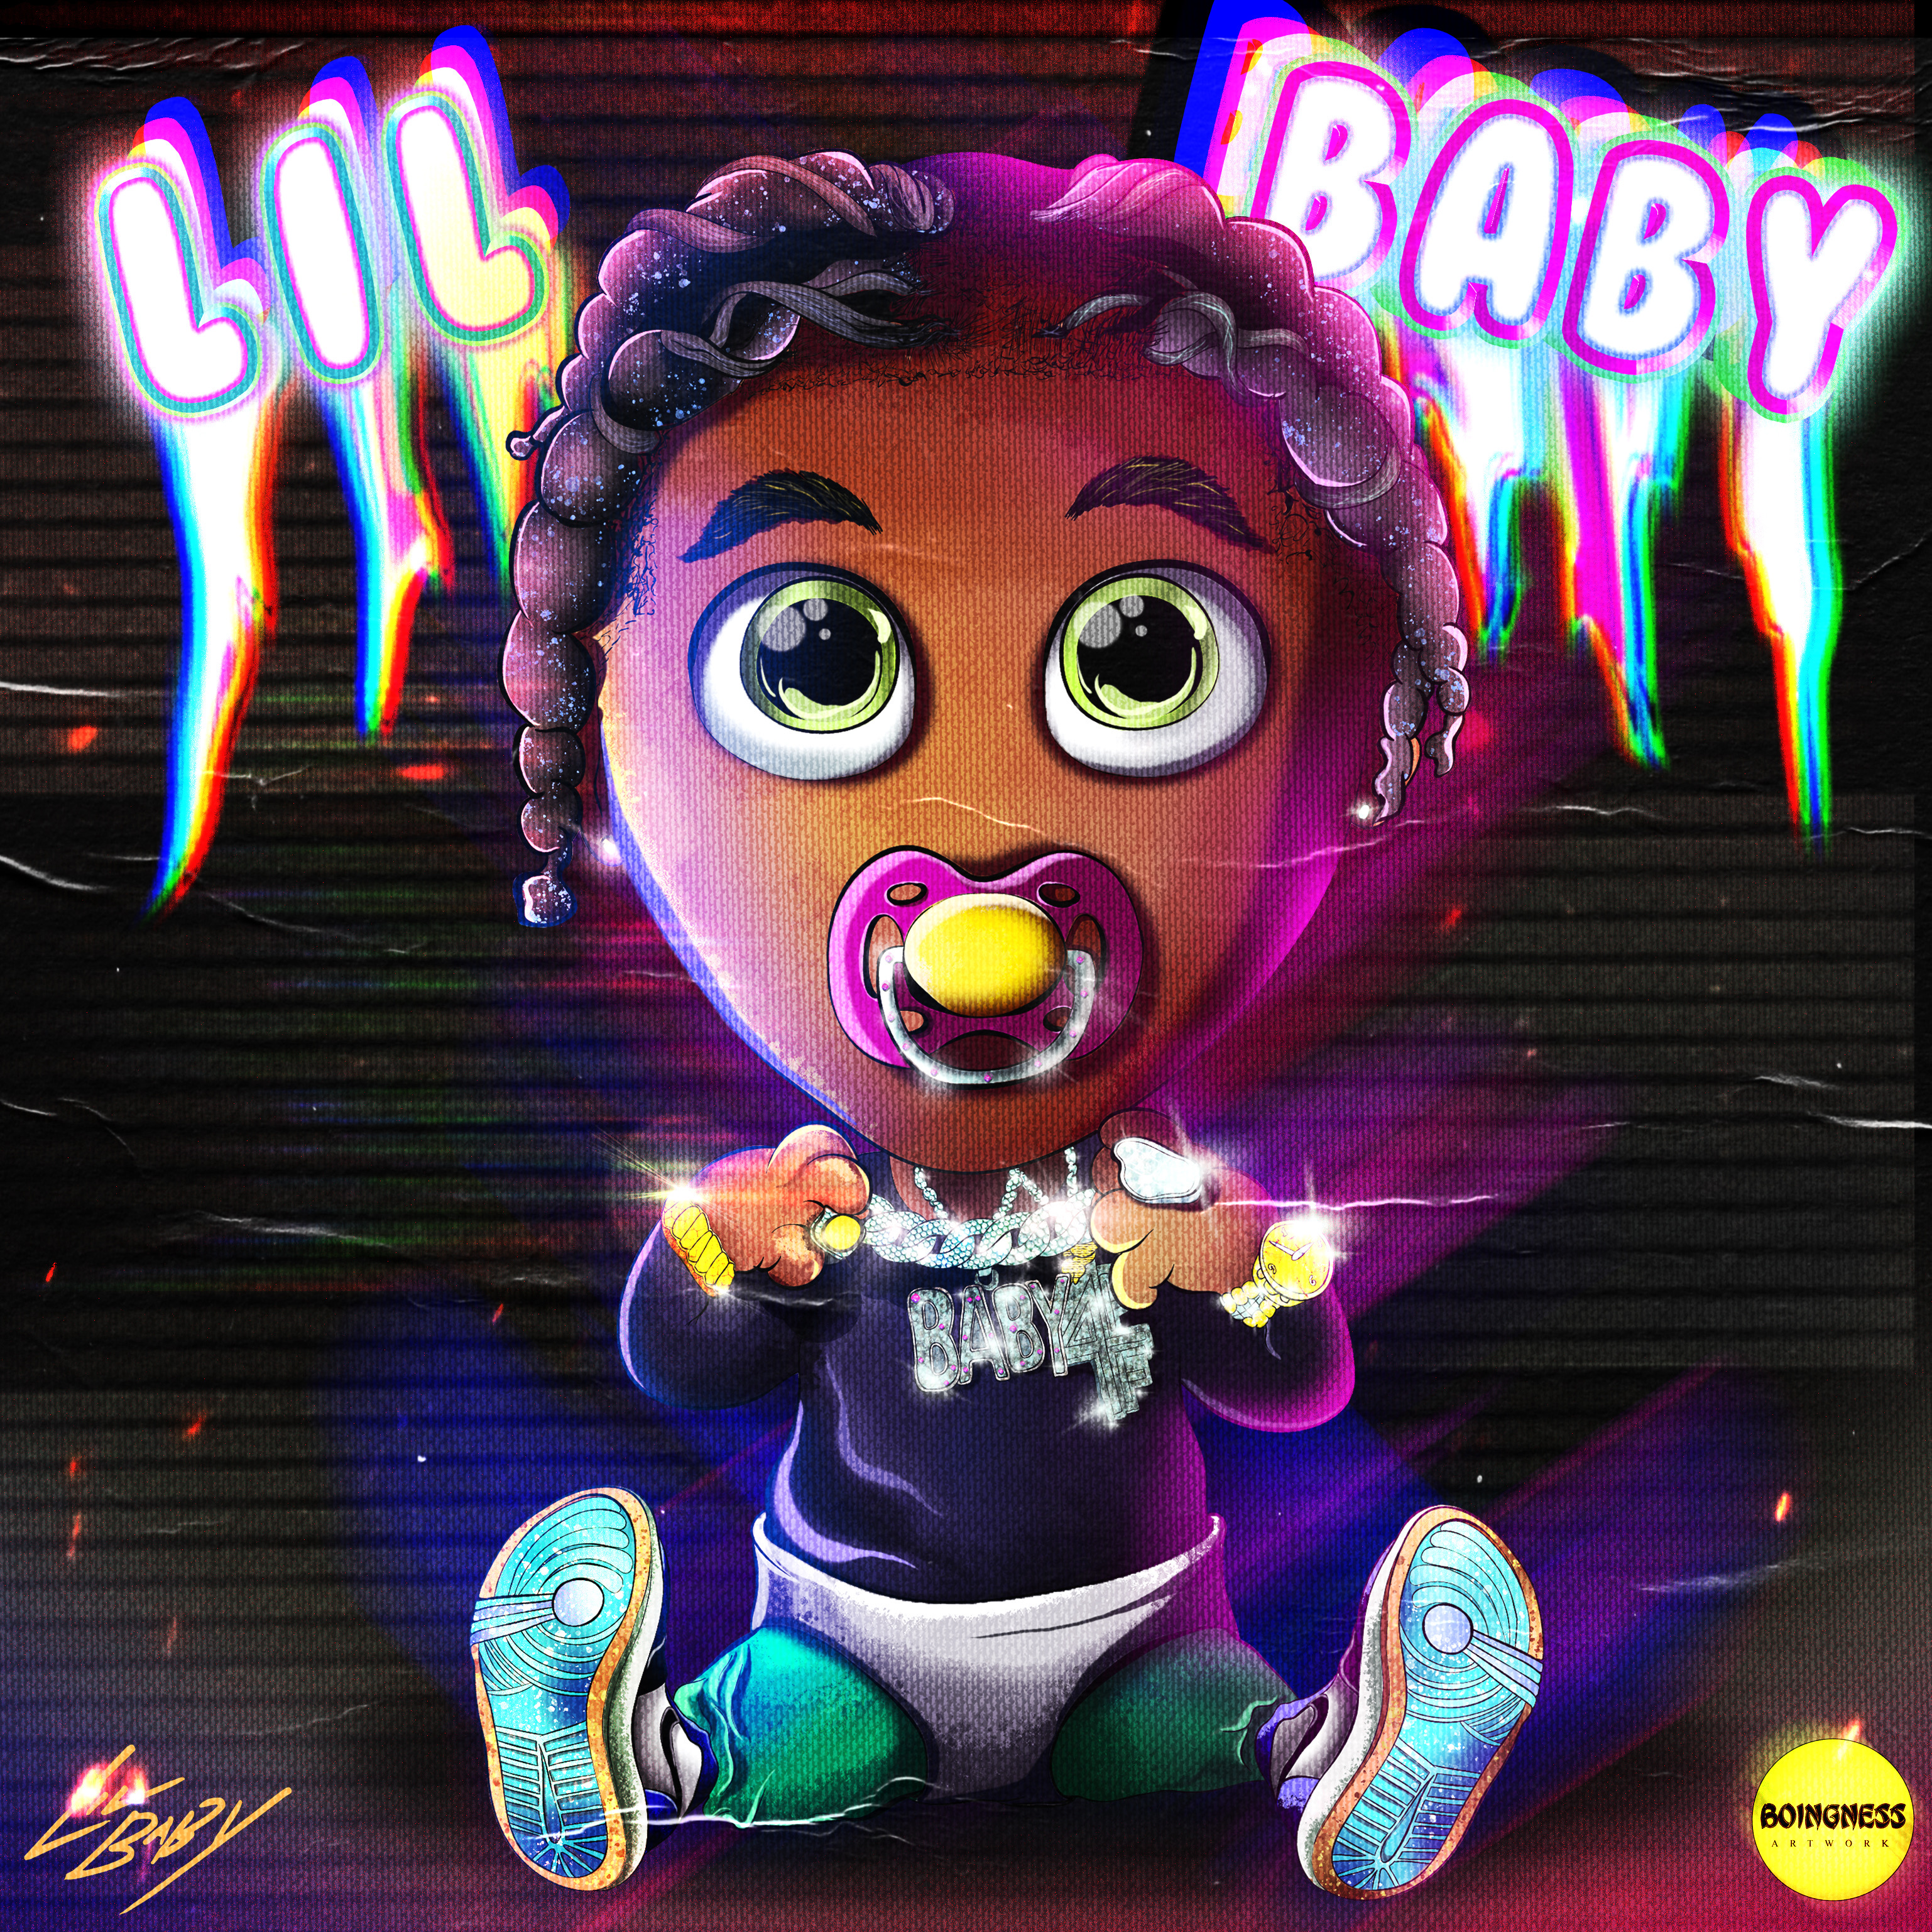 Rapper Lil Baby cartoon art by Boingness on DeviantArt